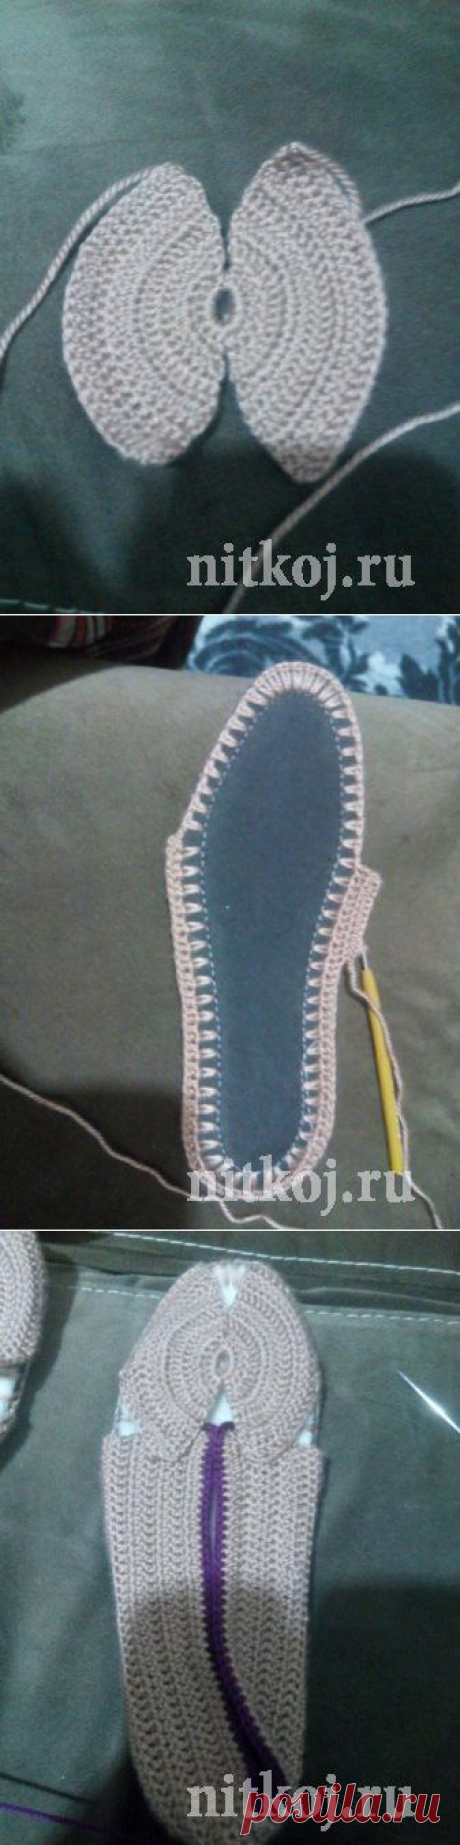 Красивые туфельки крючком » Ниткой - вязаные вещи для вашего дома, вязание крючком, вязание спицами, схемы вязания